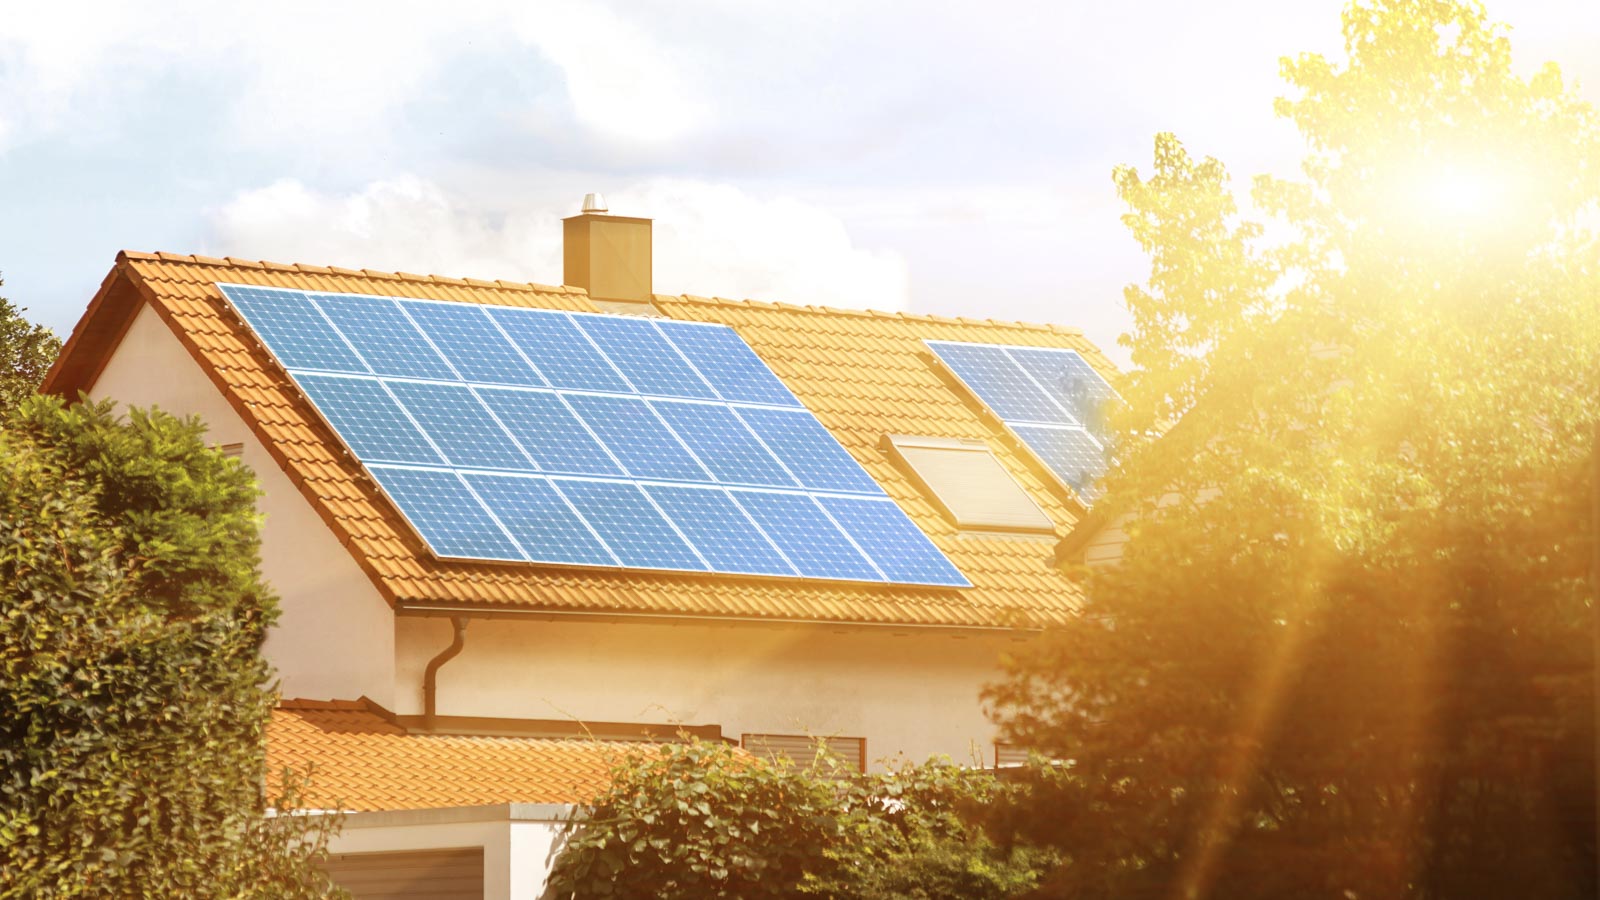 Einfamilienhaus in der Sonne mit Solarpanels auf dem Dach